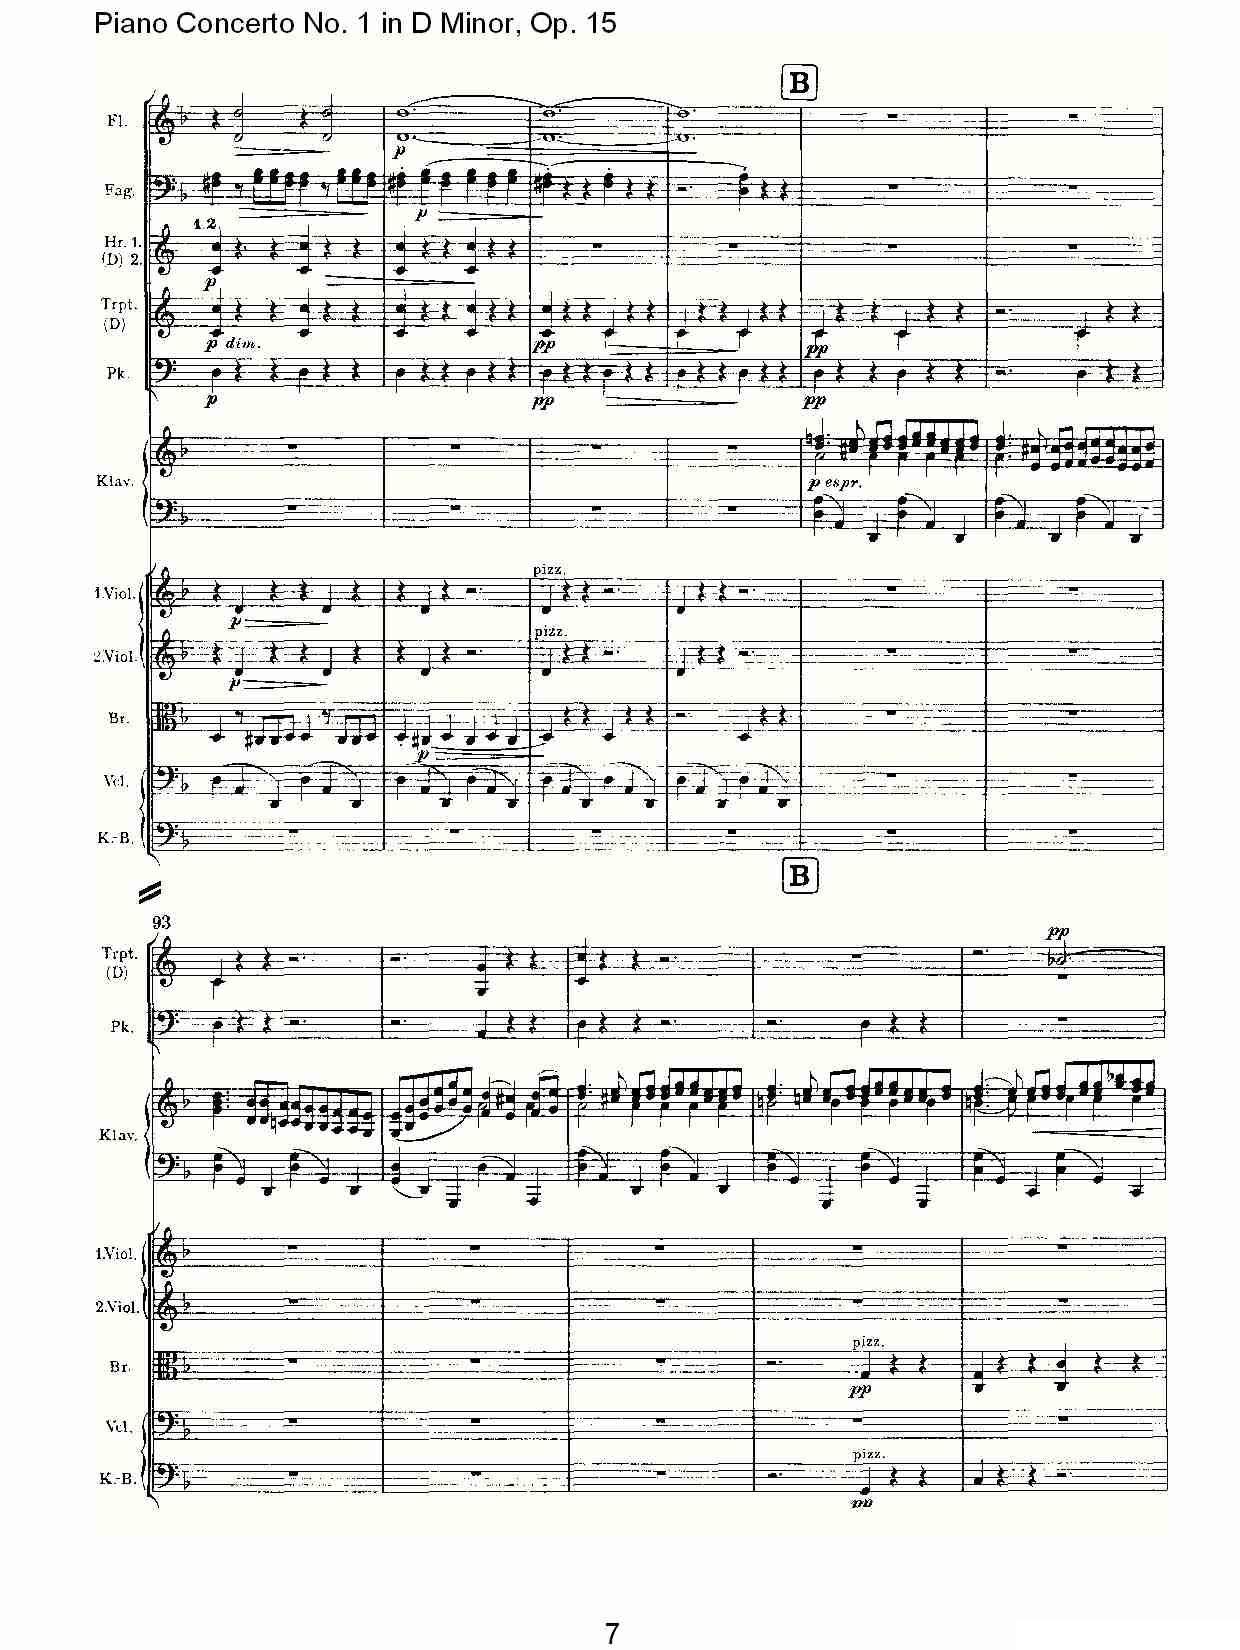 D小调钢琴第一协奏曲, Op.15第一乐章（一）钢琴曲谱（图7）